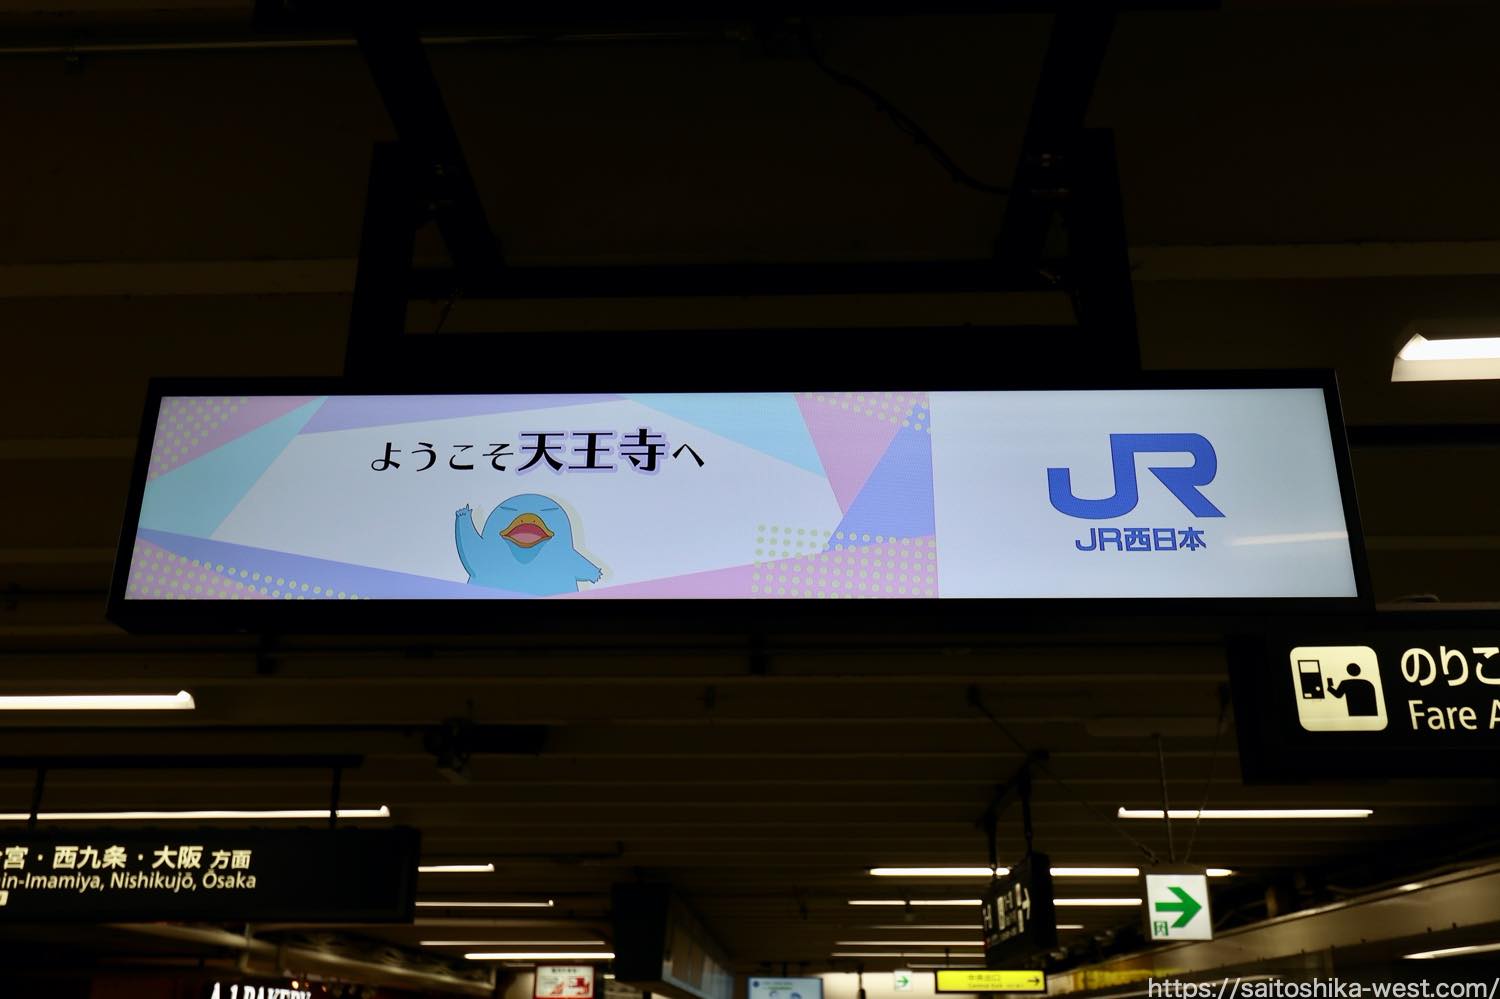 Jr西日本ー天王寺駅でウルトラワイド液晶を使用した Lcd案内サイン のテストが始まる Re Urbanization 再都市化